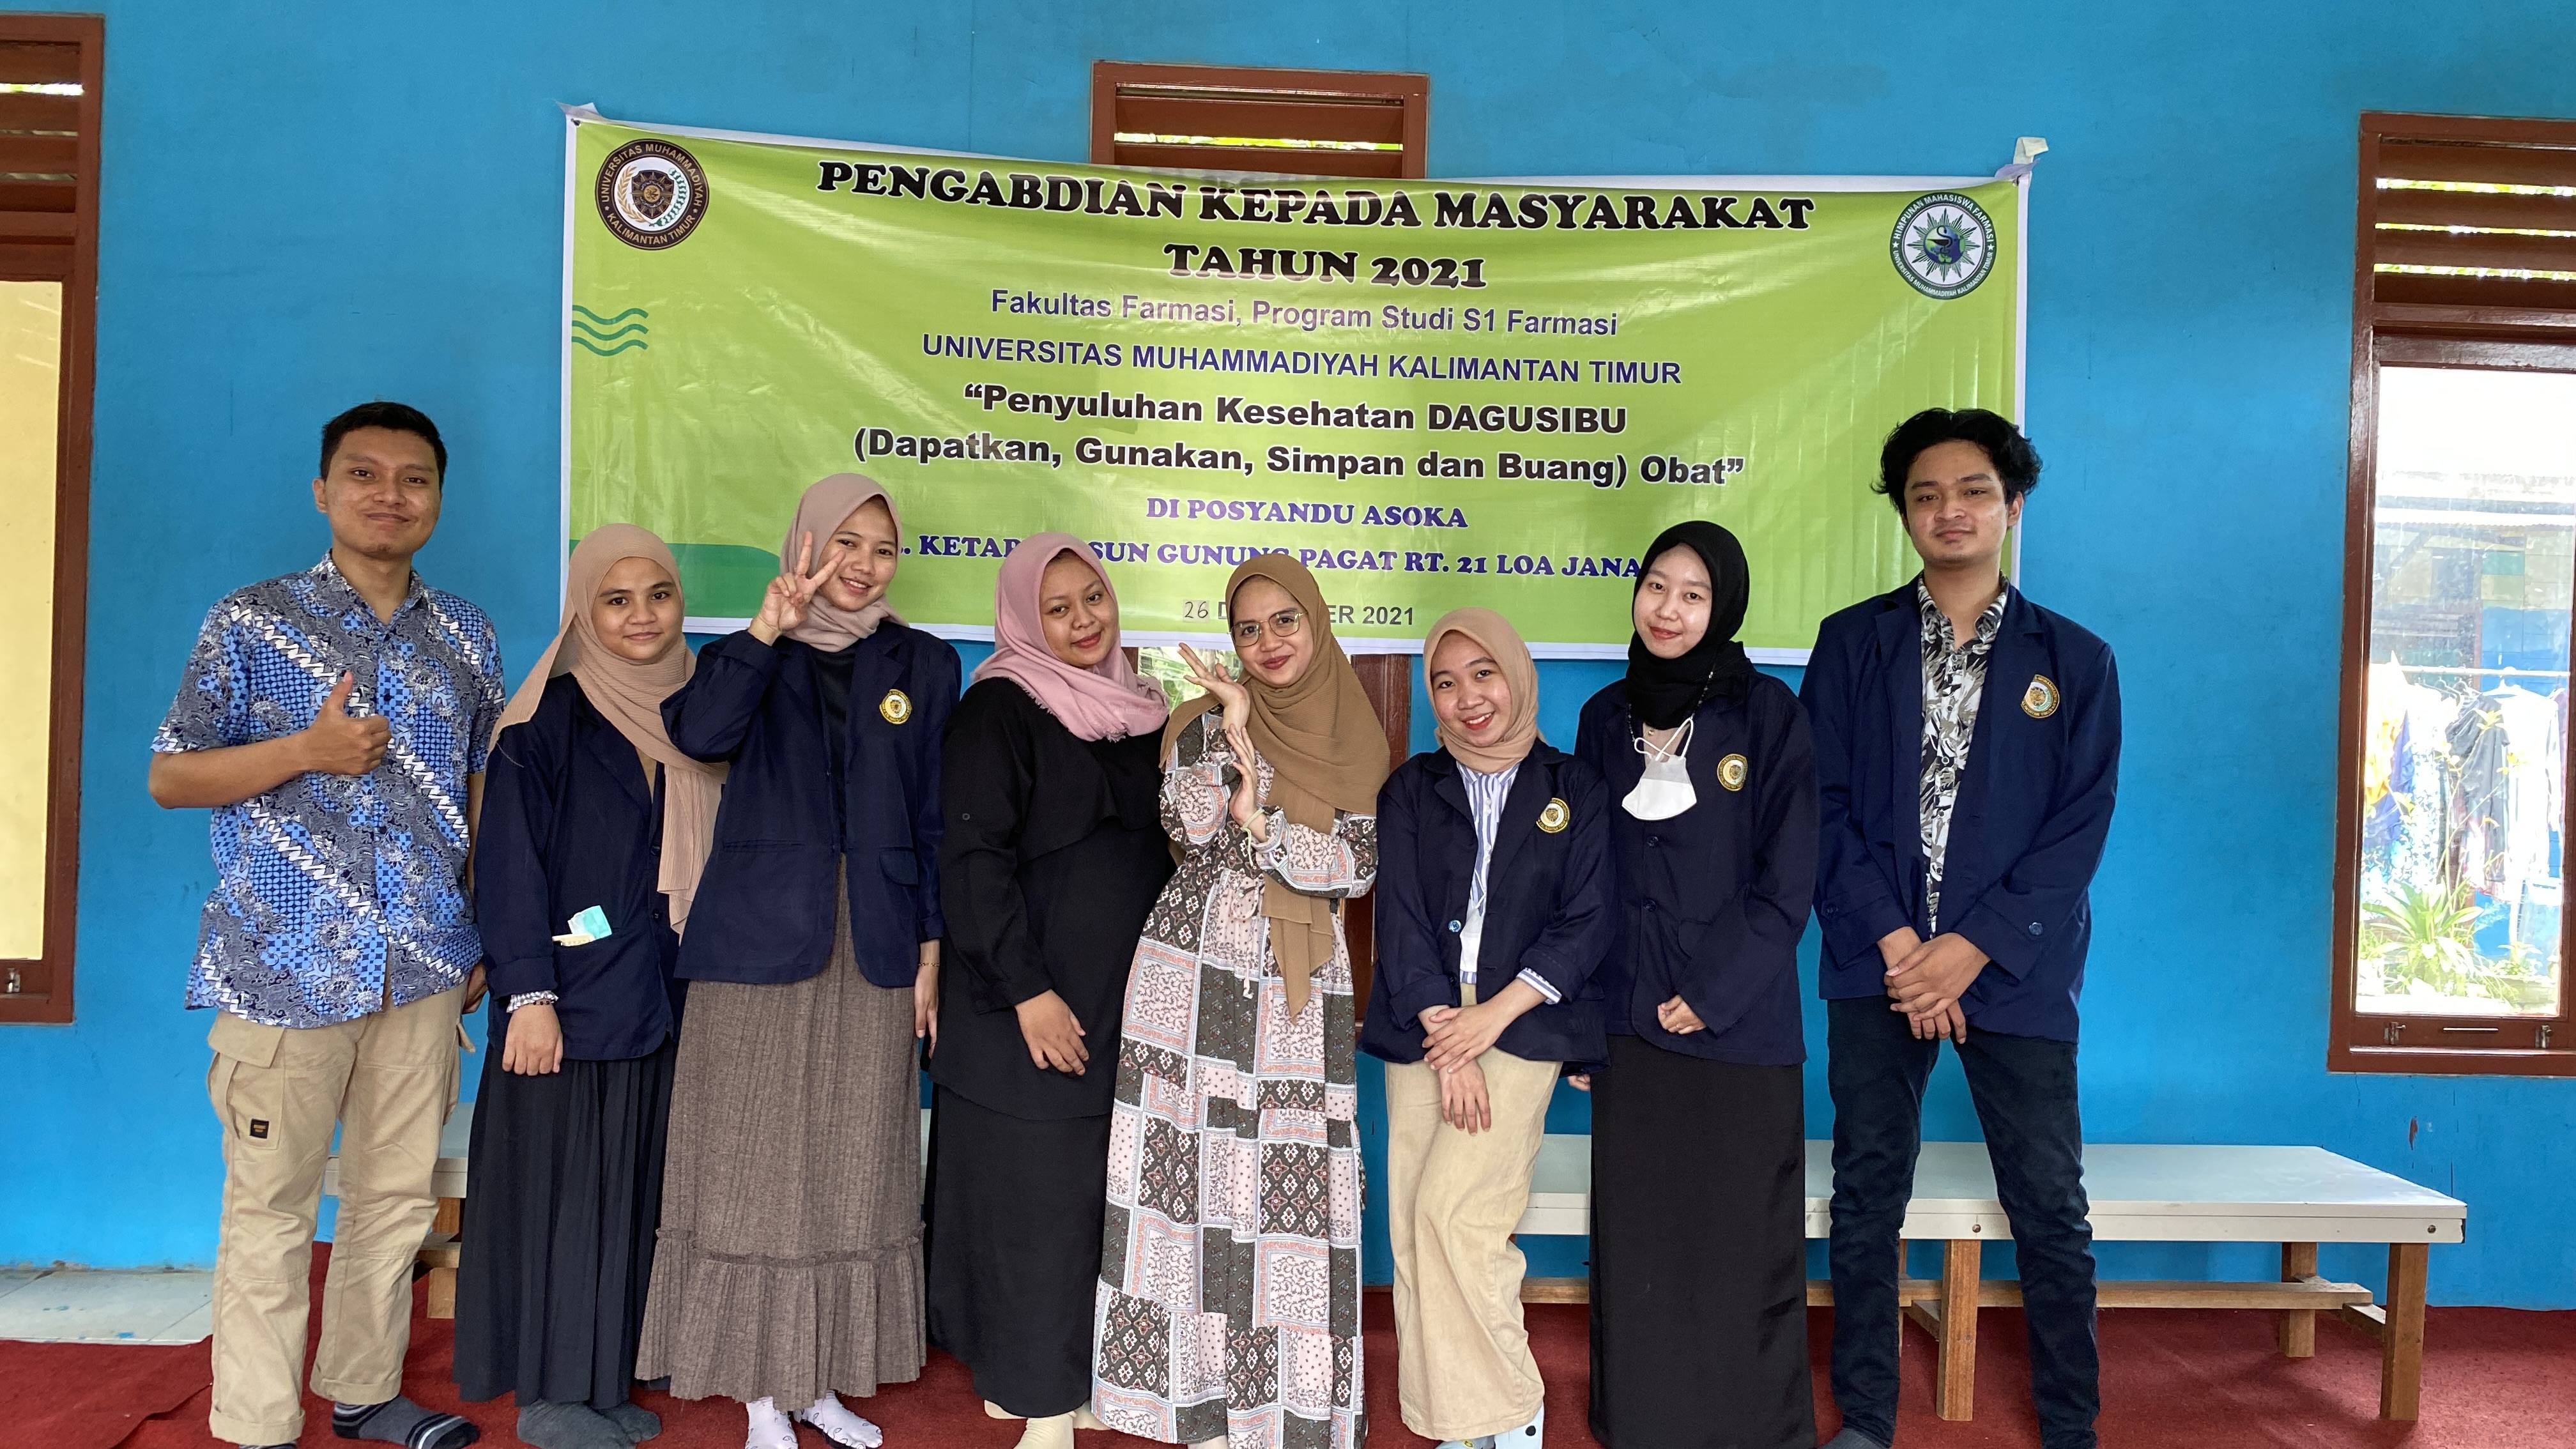 Pengabdian masyarakat Fakultas Farmasi Universitas Muhammadiyah Kalimantan Timur diharapkan menumbuhkan kesadaran warga terhadap kesehatan selama masa pandemi Covid-19.